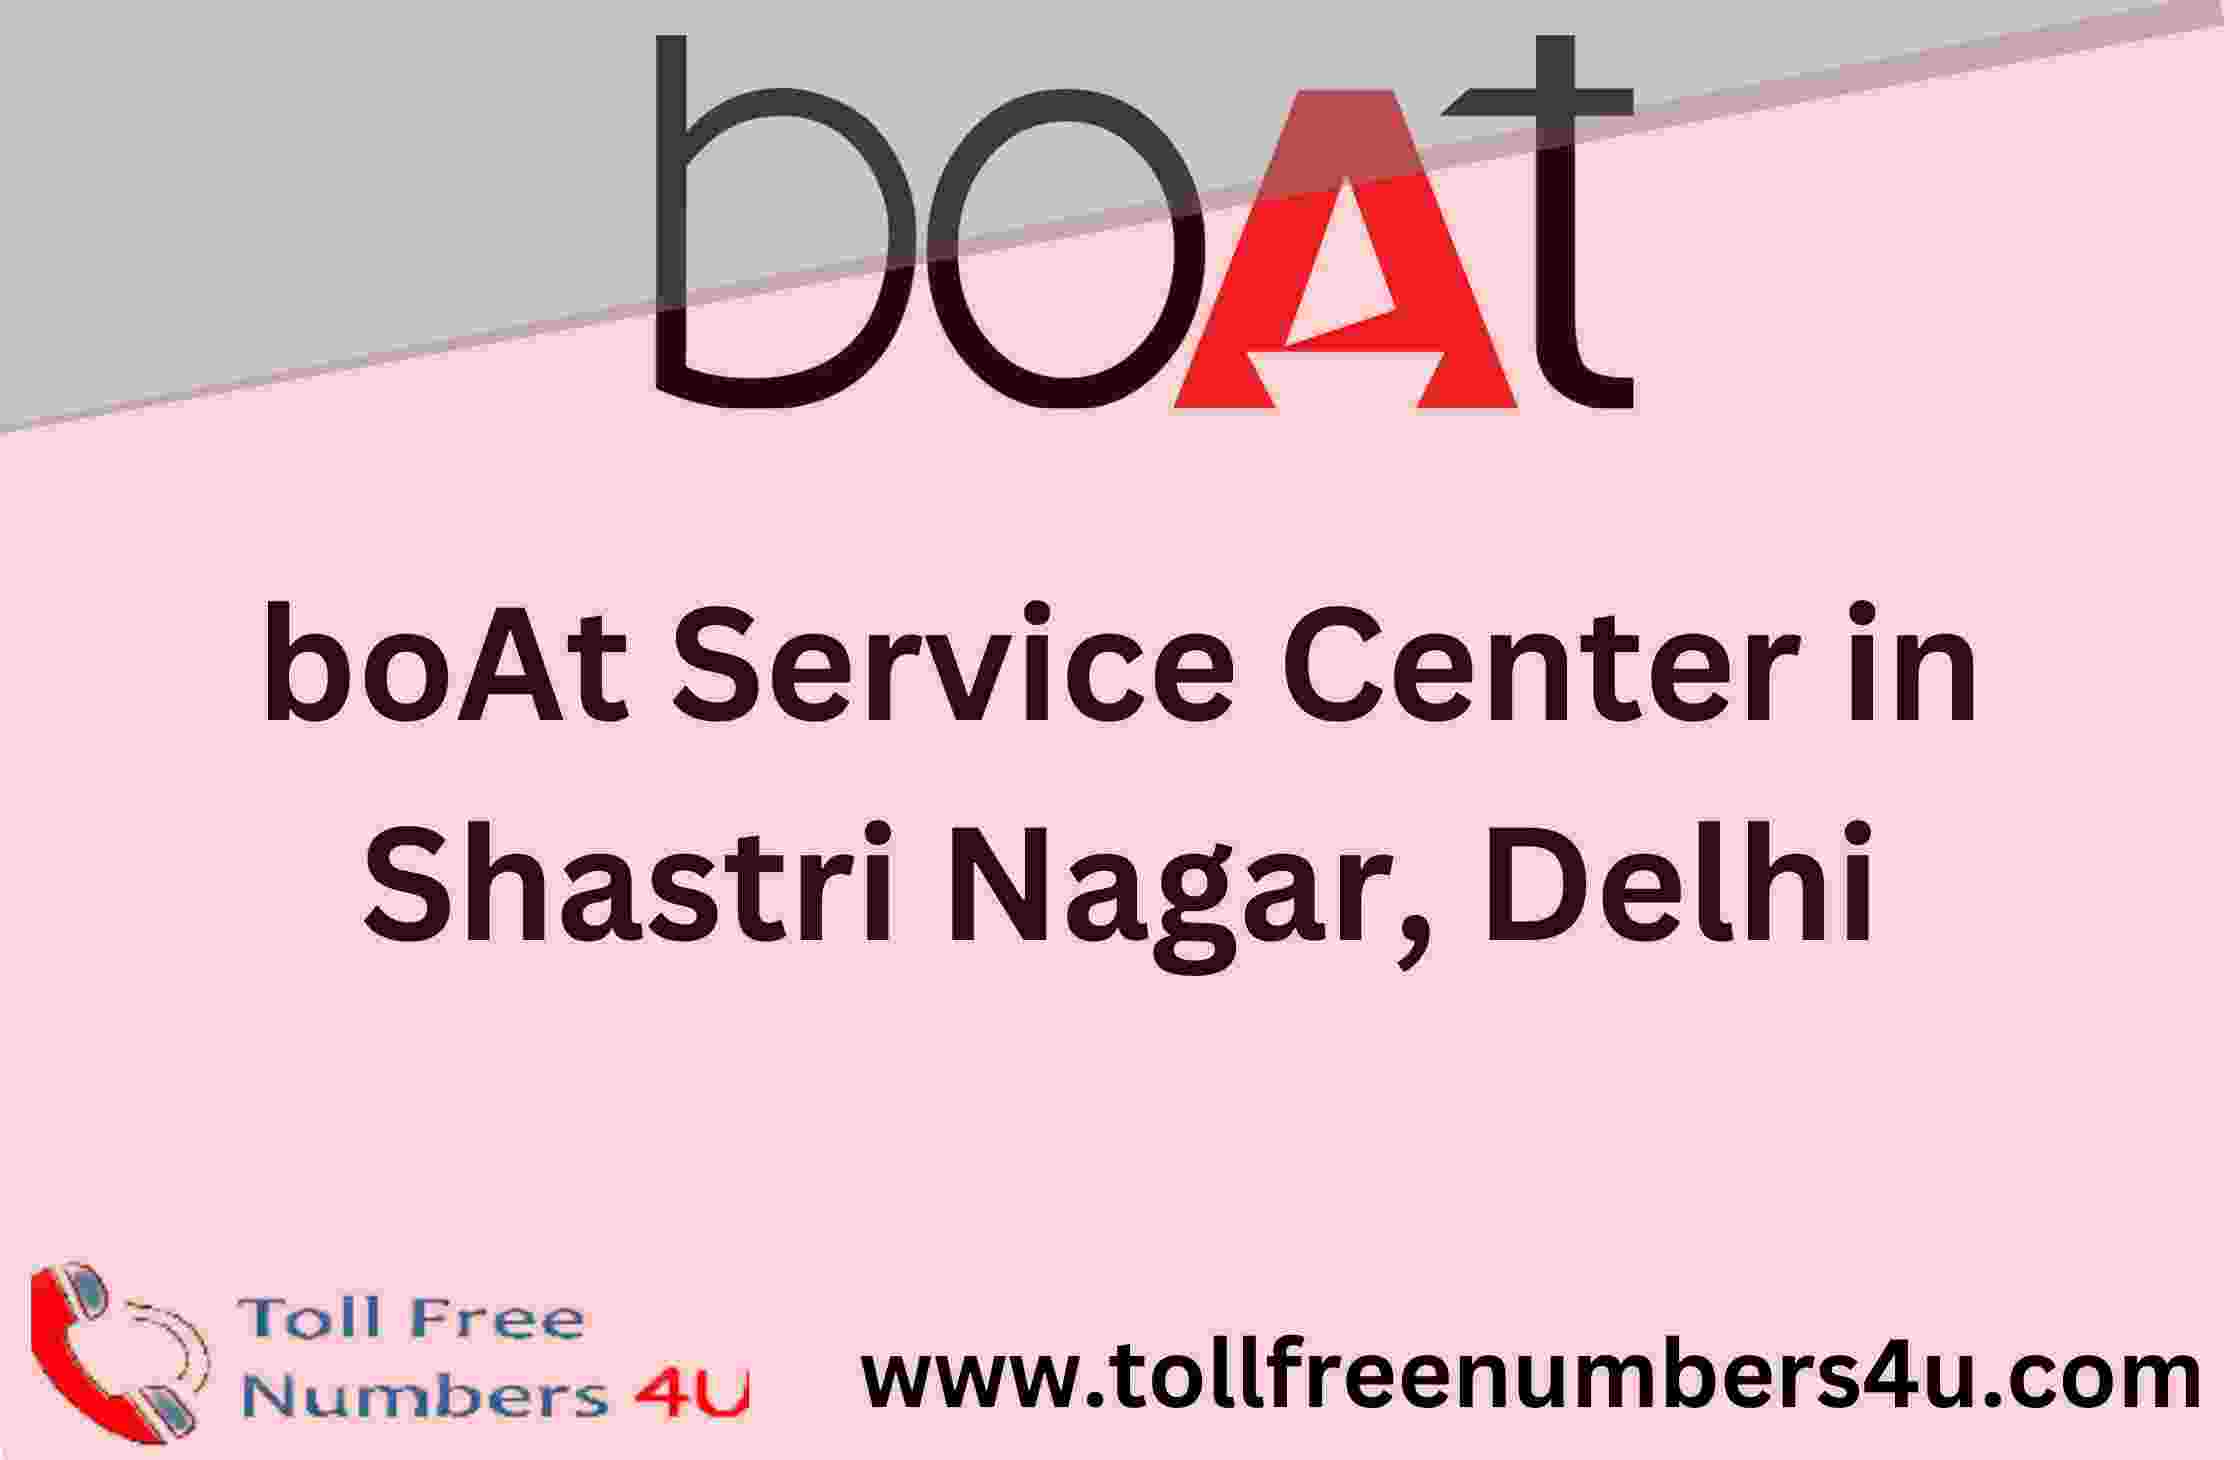 boAt Service Center in Shastri Nagar Delhi